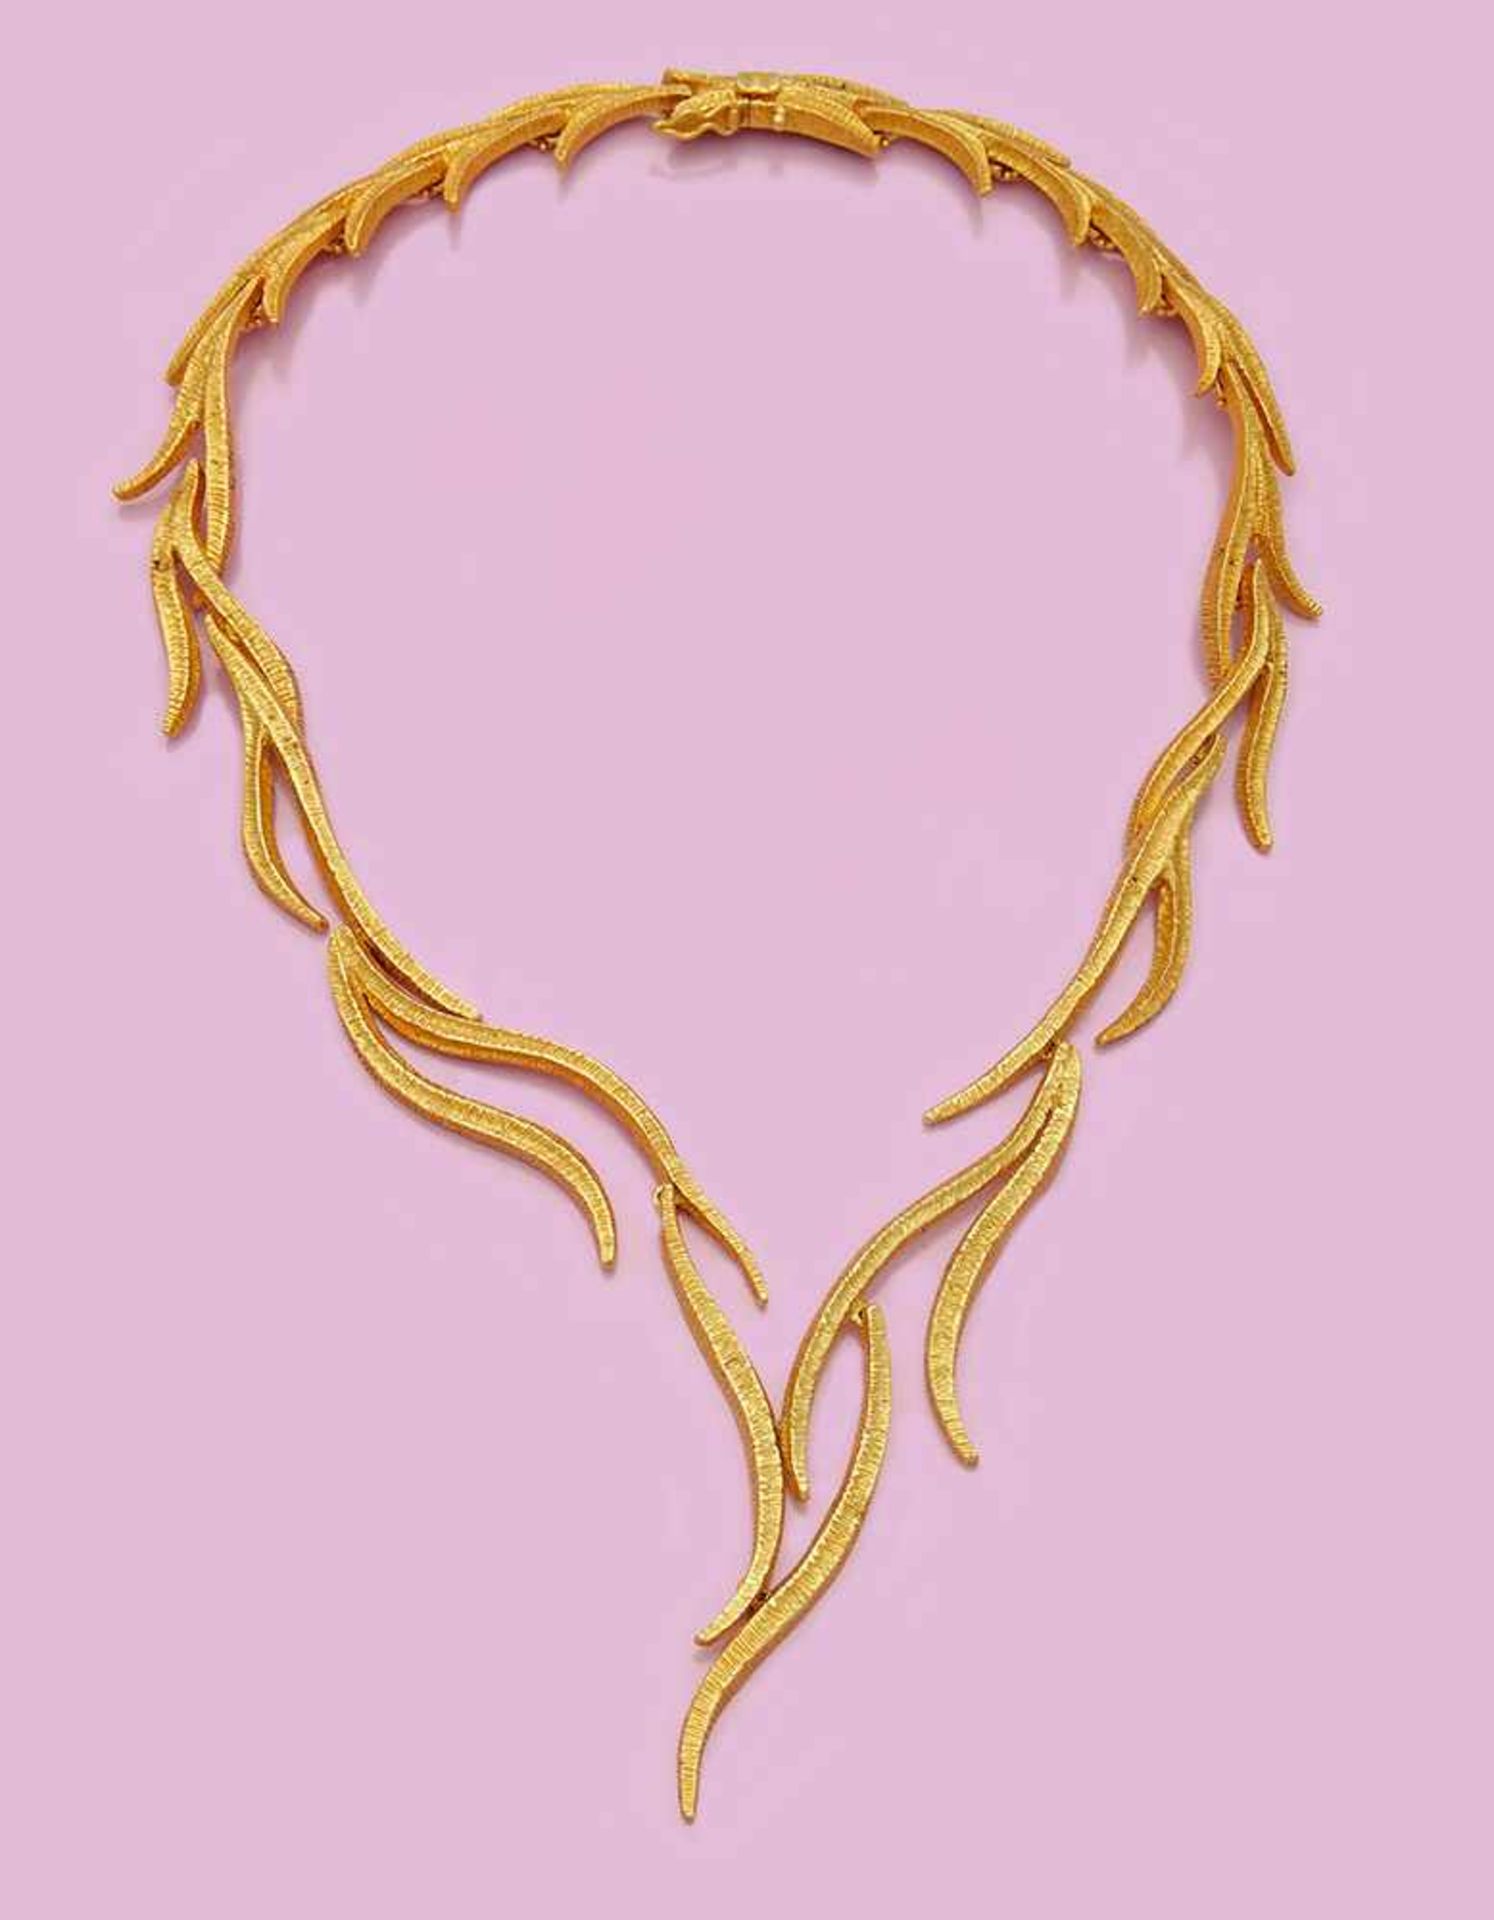 Extravagantes Gold-Collier von Georgius auf MykonosGelbgold, gest. 750. Verlaufende Form gestaltet